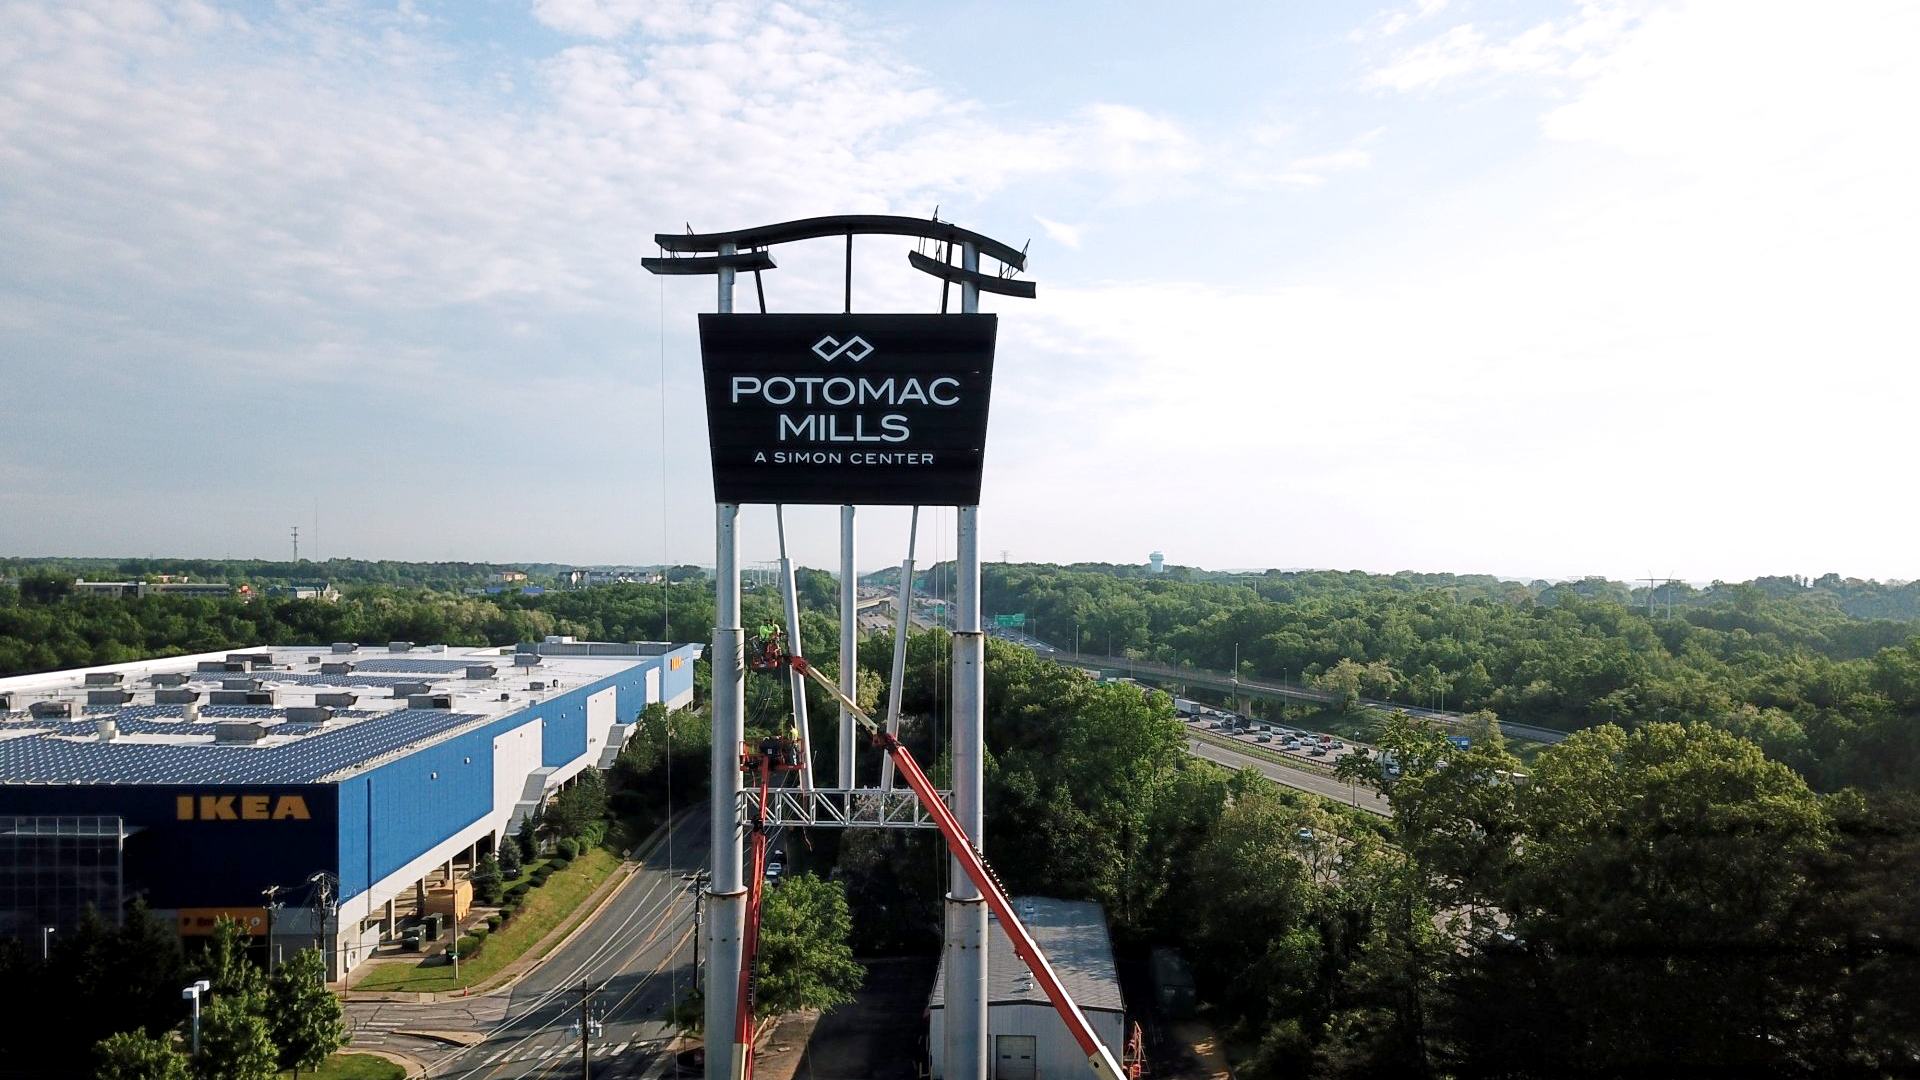 Potomac Mills - A Simon Center sign